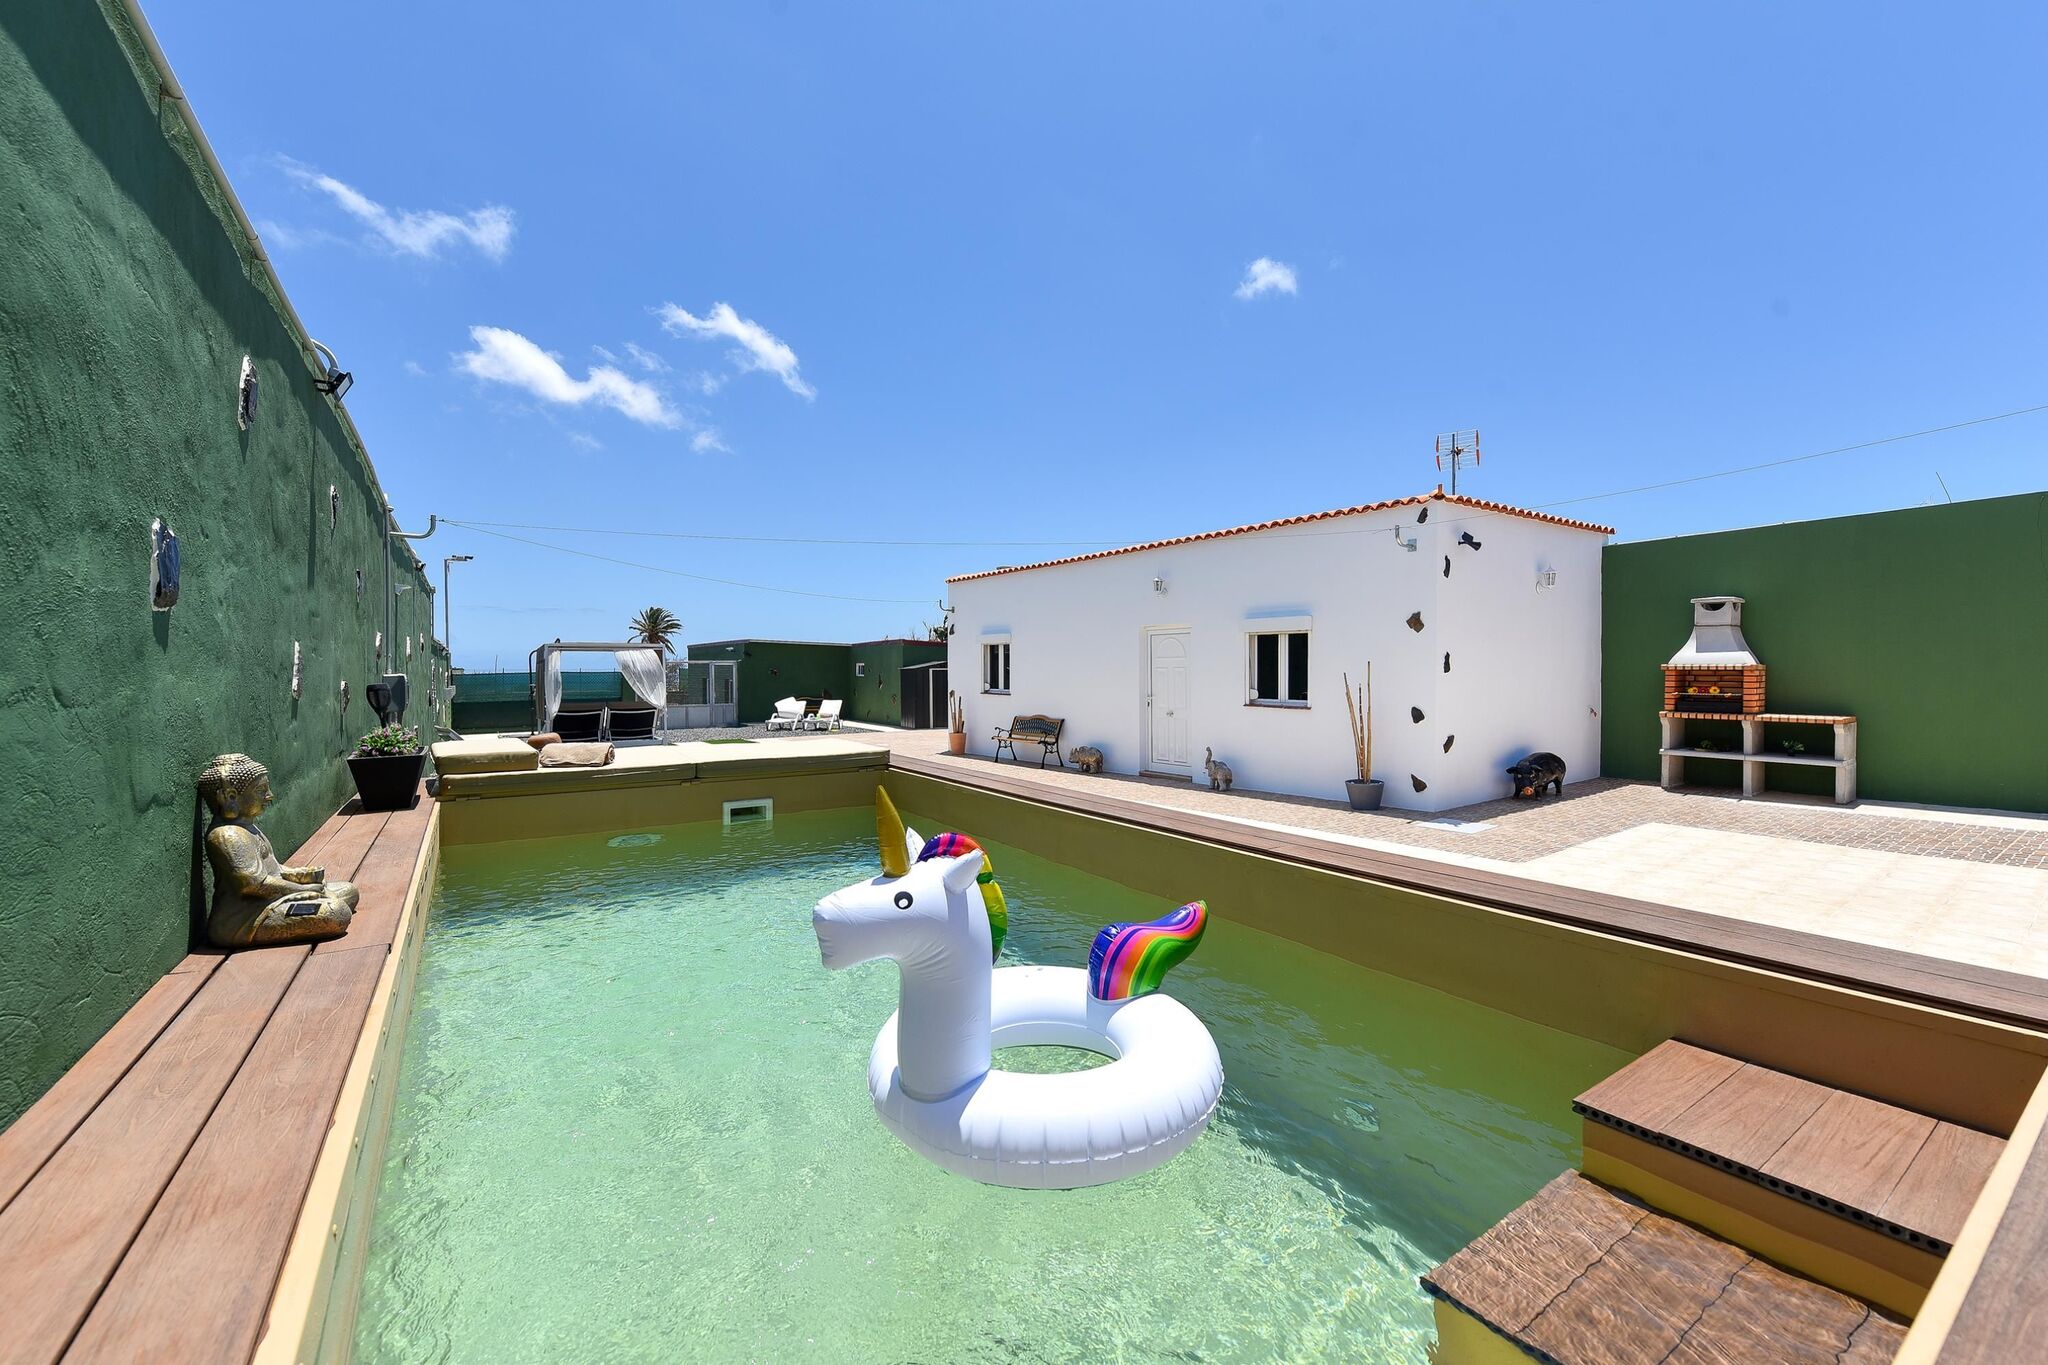 Landelijk vakantiehuis voor families en groepen met schitterend privé zwembad